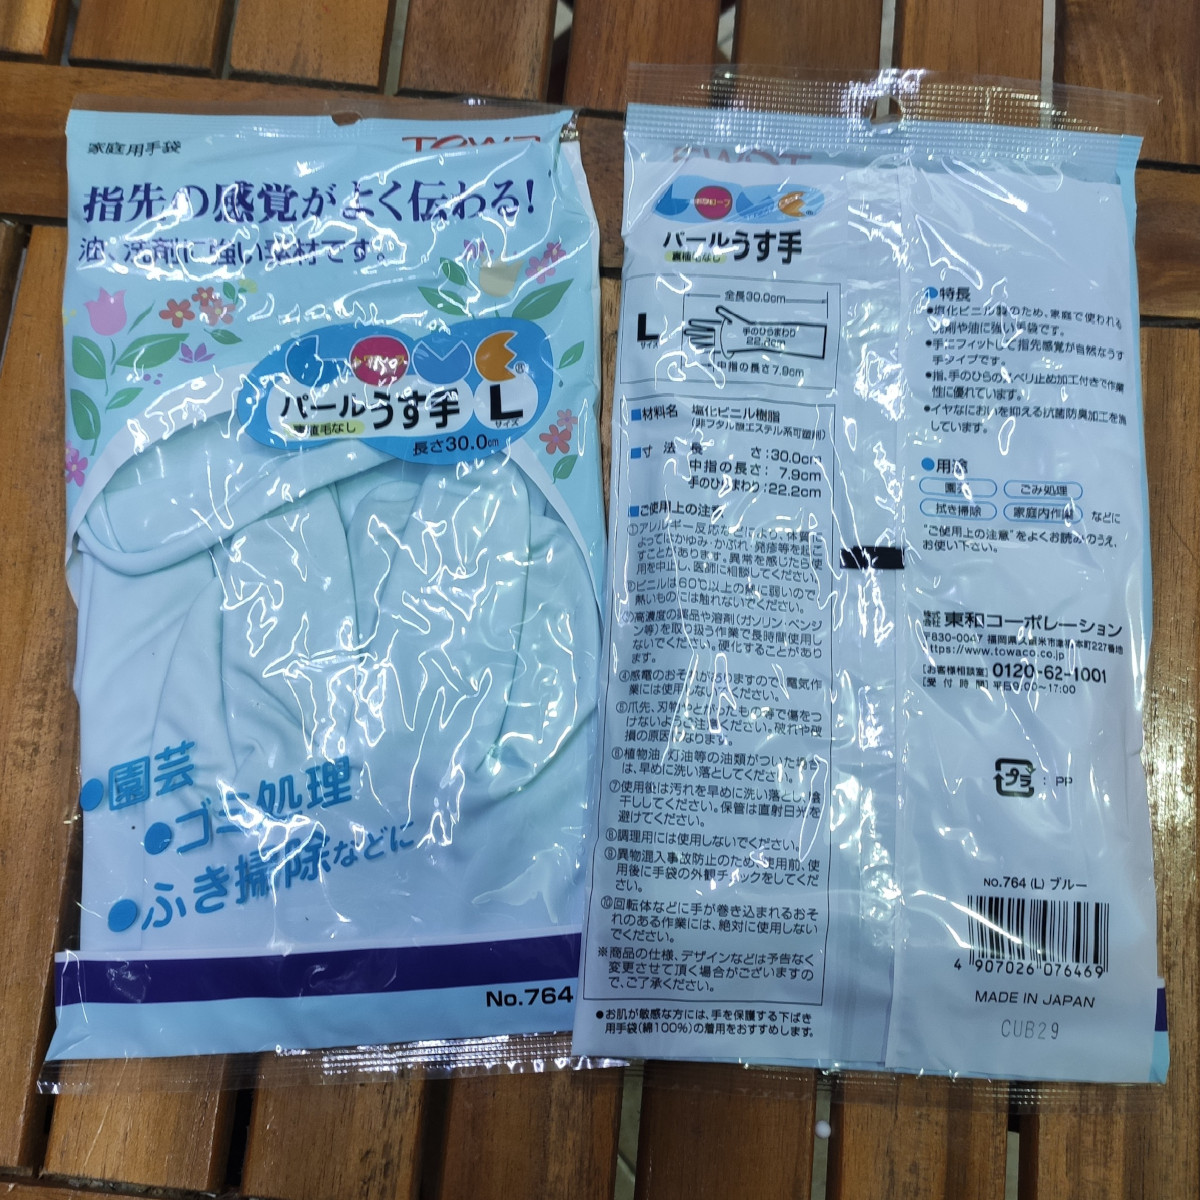 Găng tay cao su rửa bát Towa TW-764 hàng Nhật size L xanh